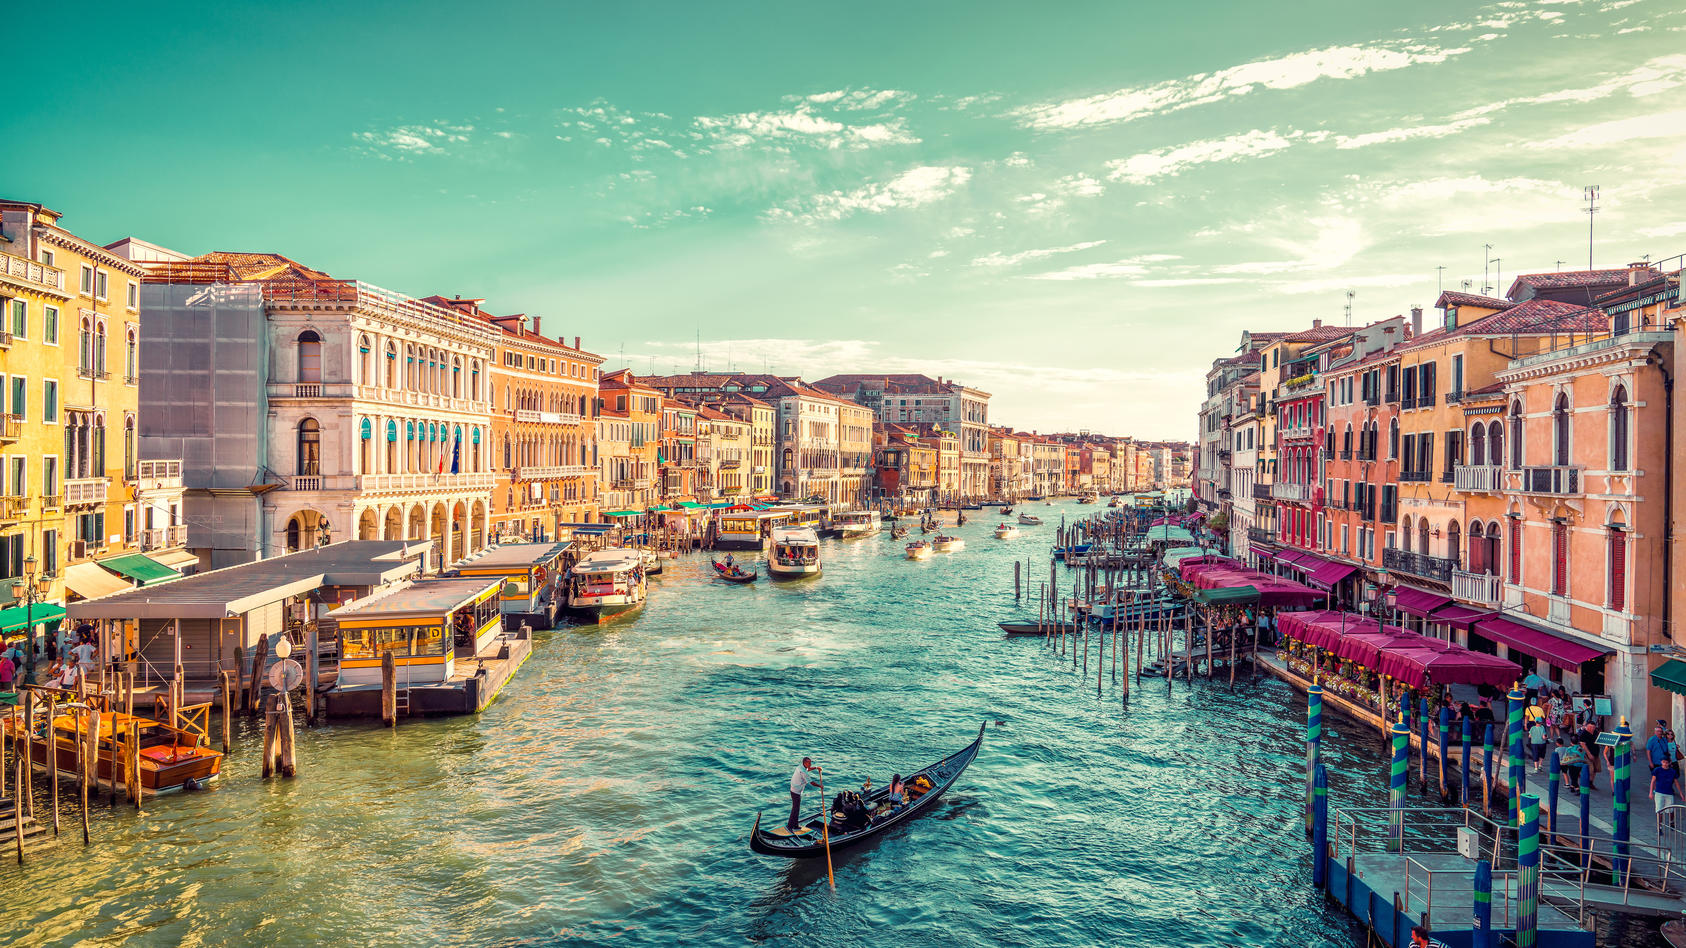 Hafen von Venedig am Tag.